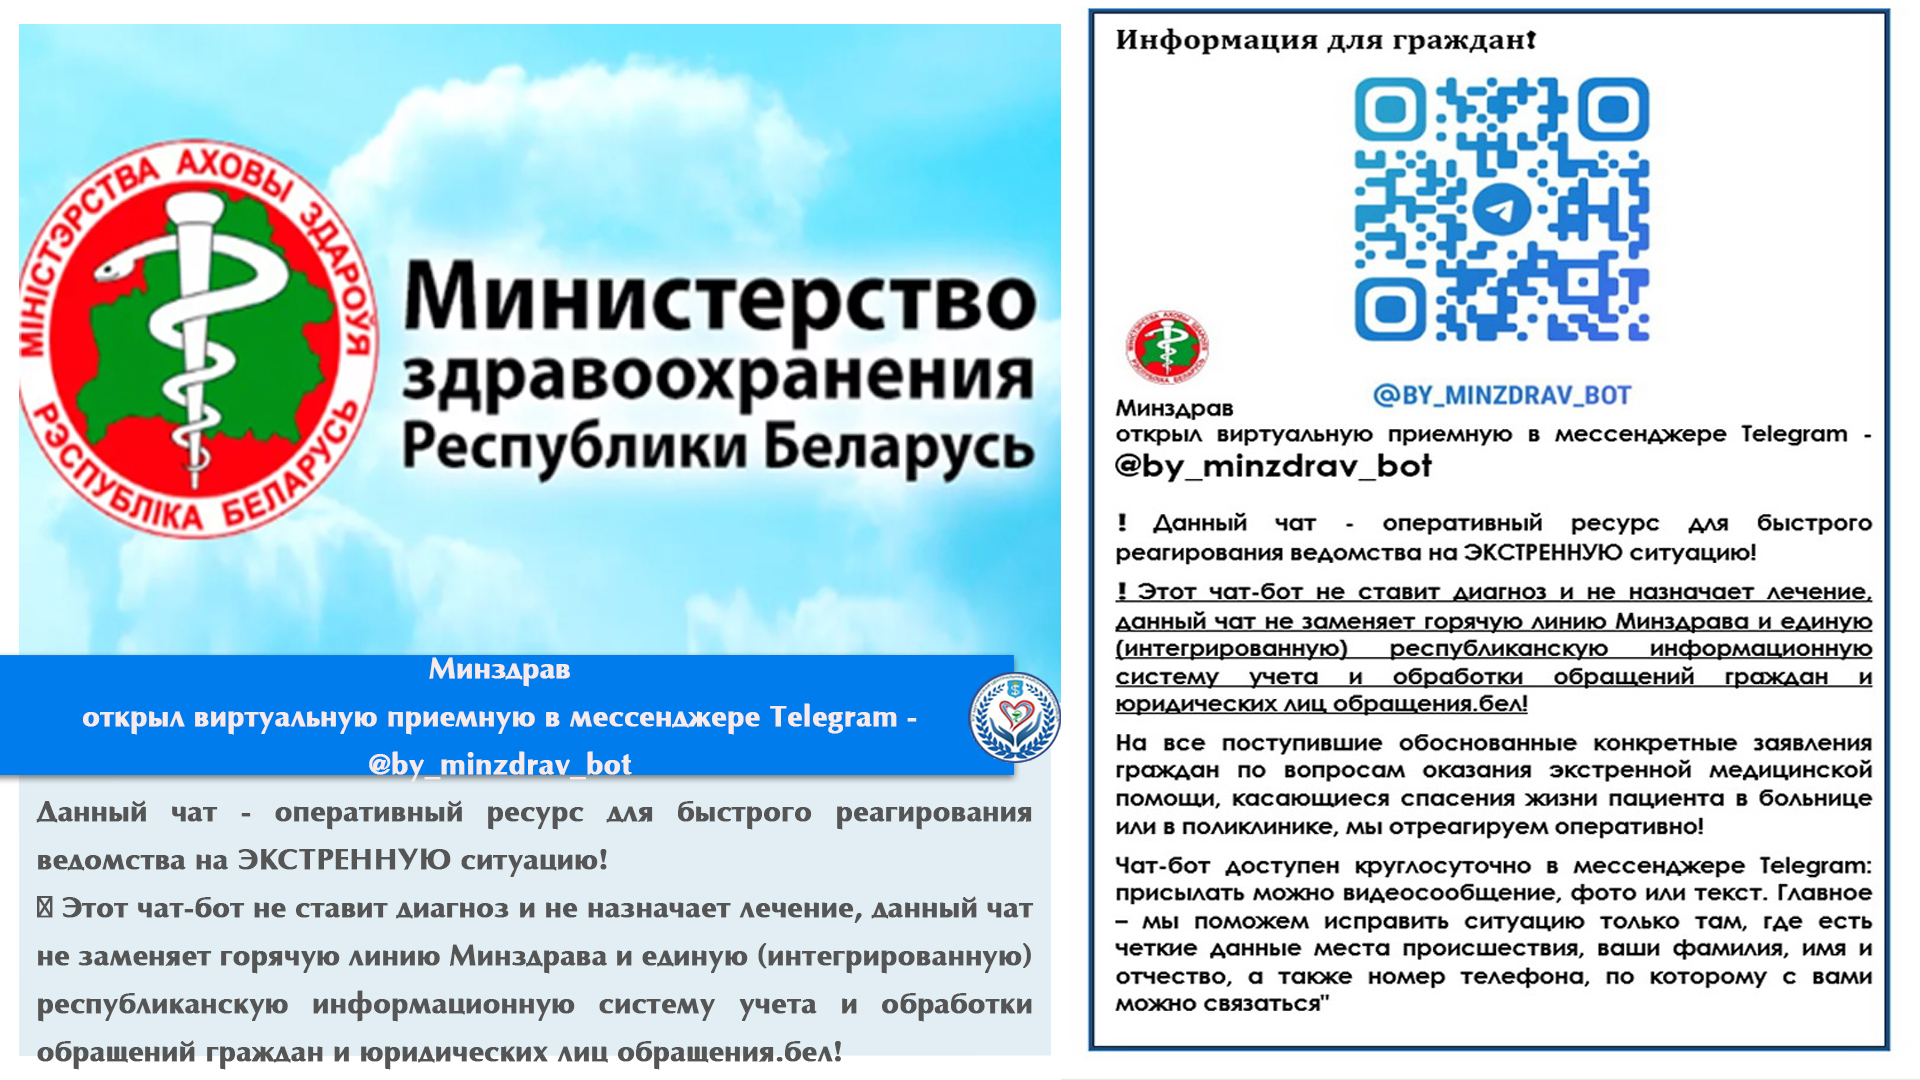 Минздрав  открыл виртуальную приемную в мессенджере Telegram